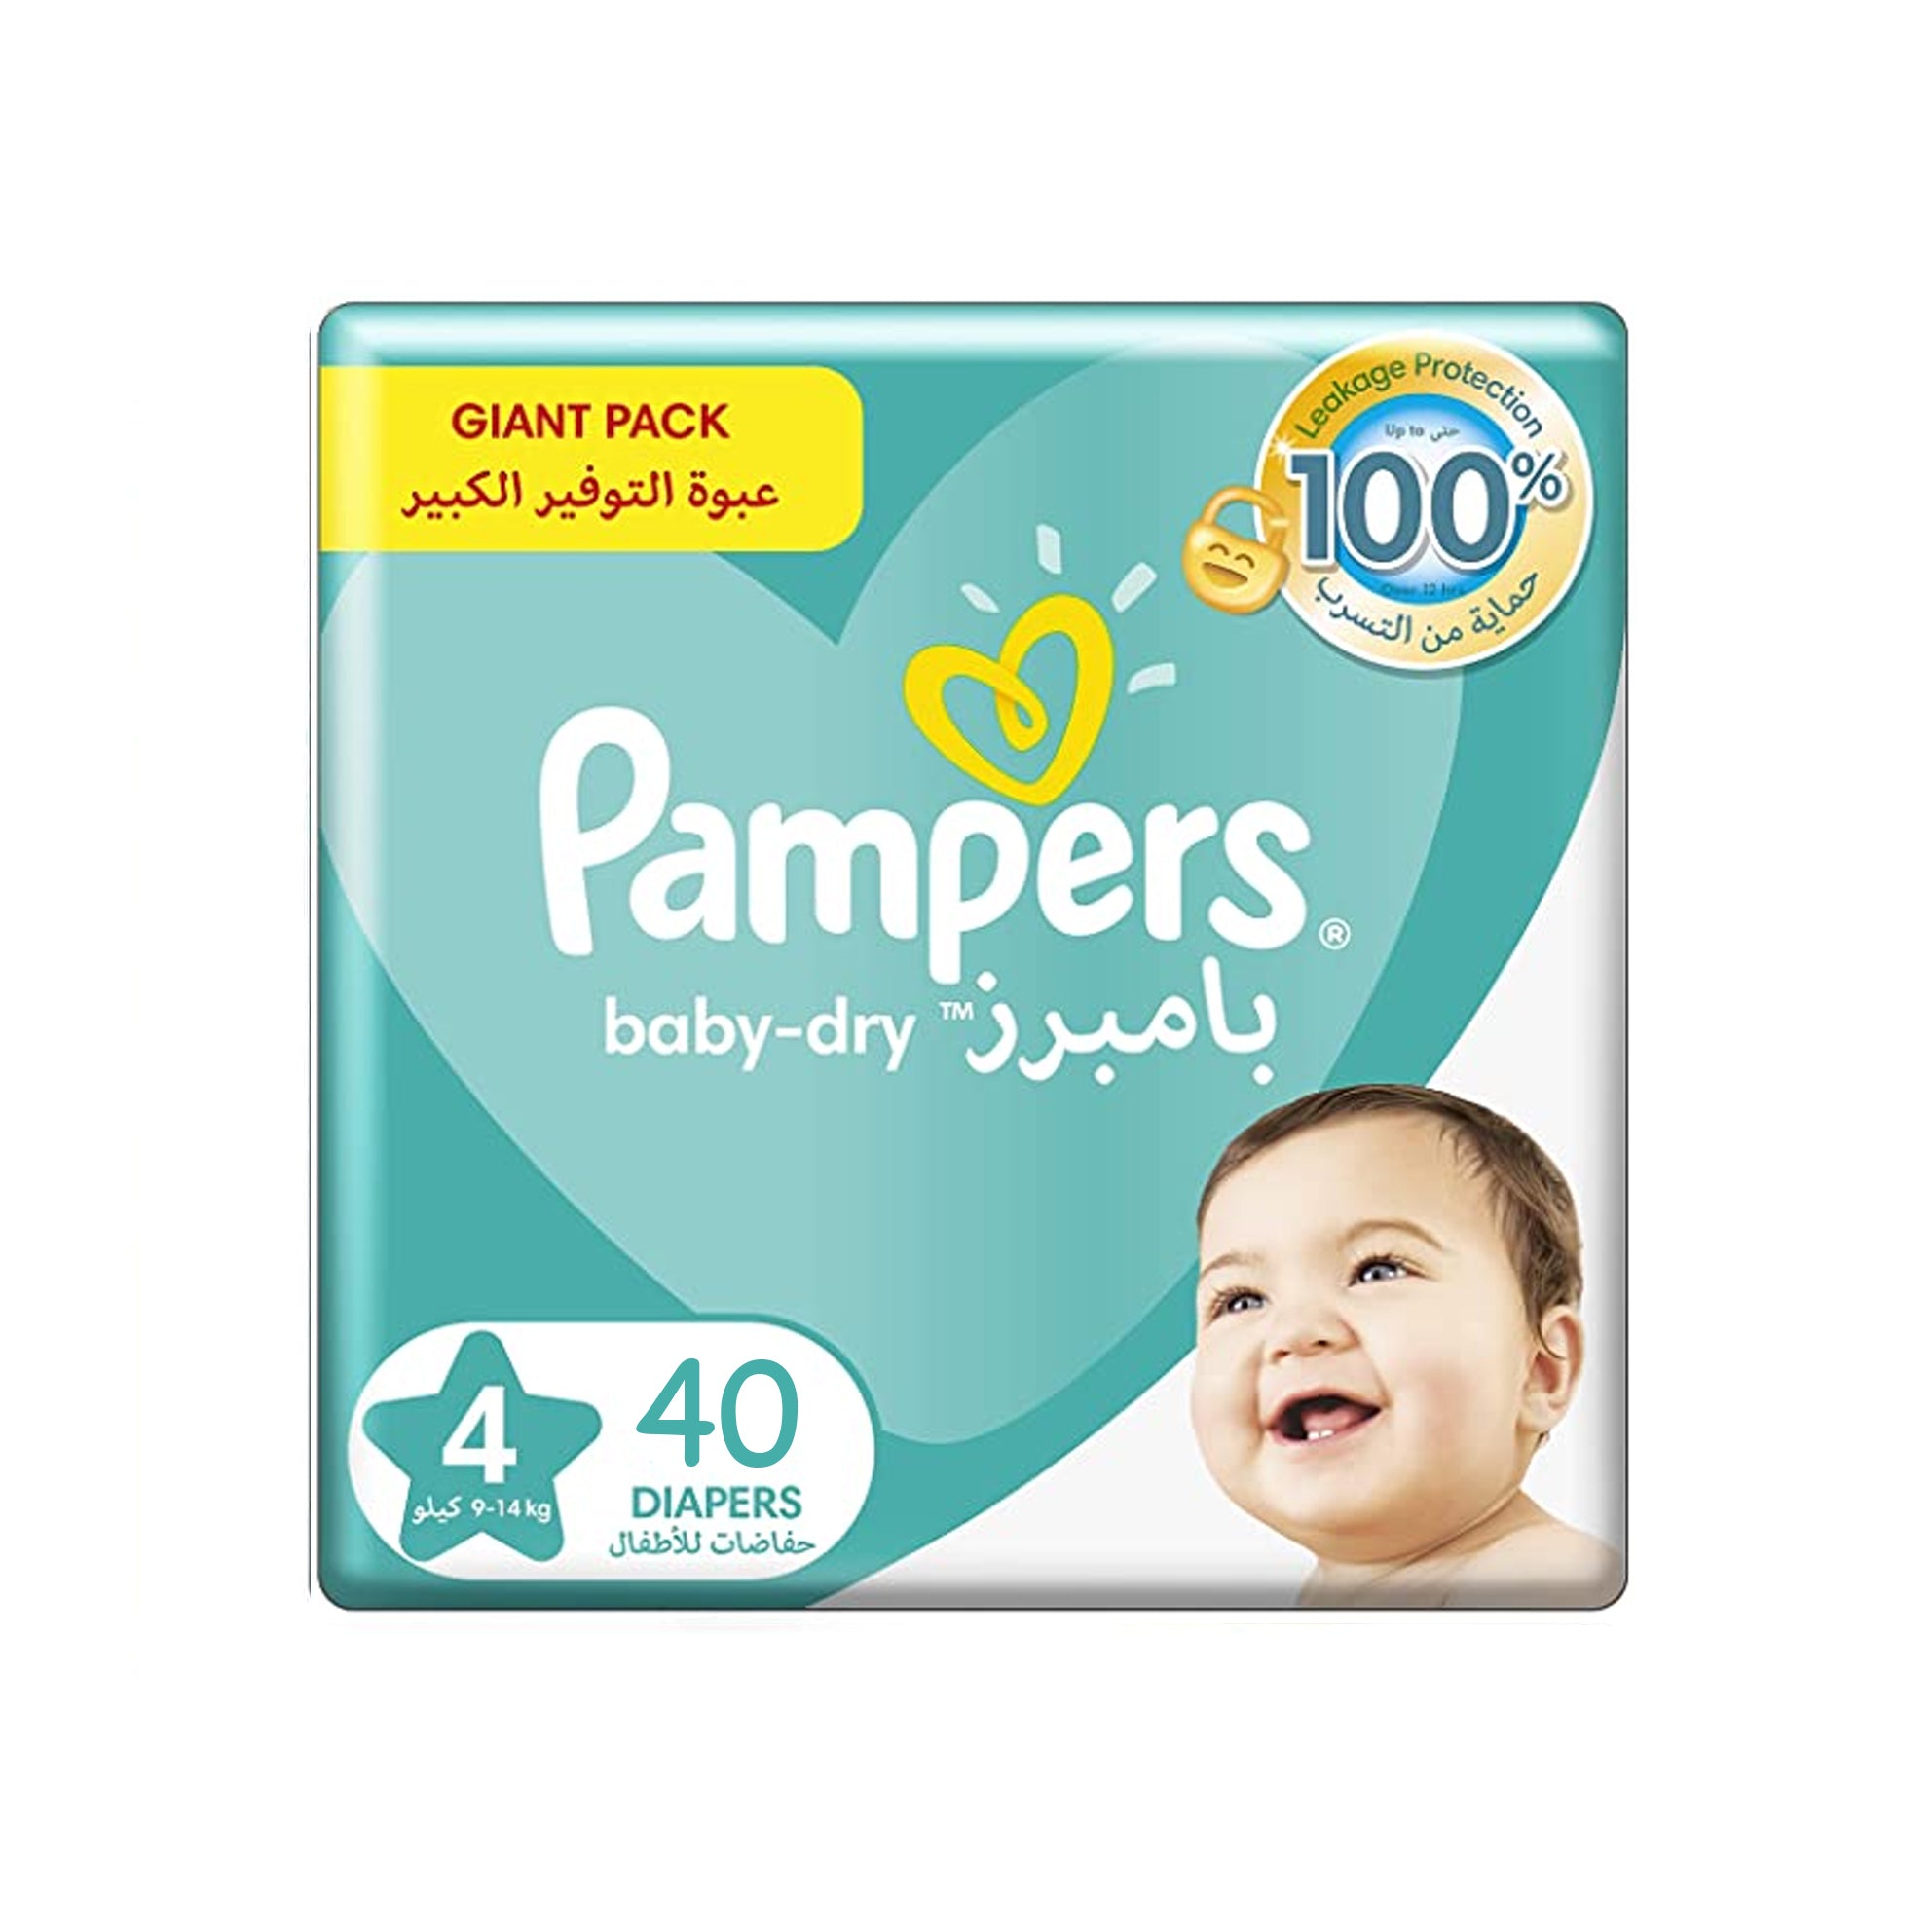 Proficiat fluiten breedtegraad Pampers baby-dry Size 4 - Jumbo Pack Maxi (9-14 kg), 40 Count – BambiniJO